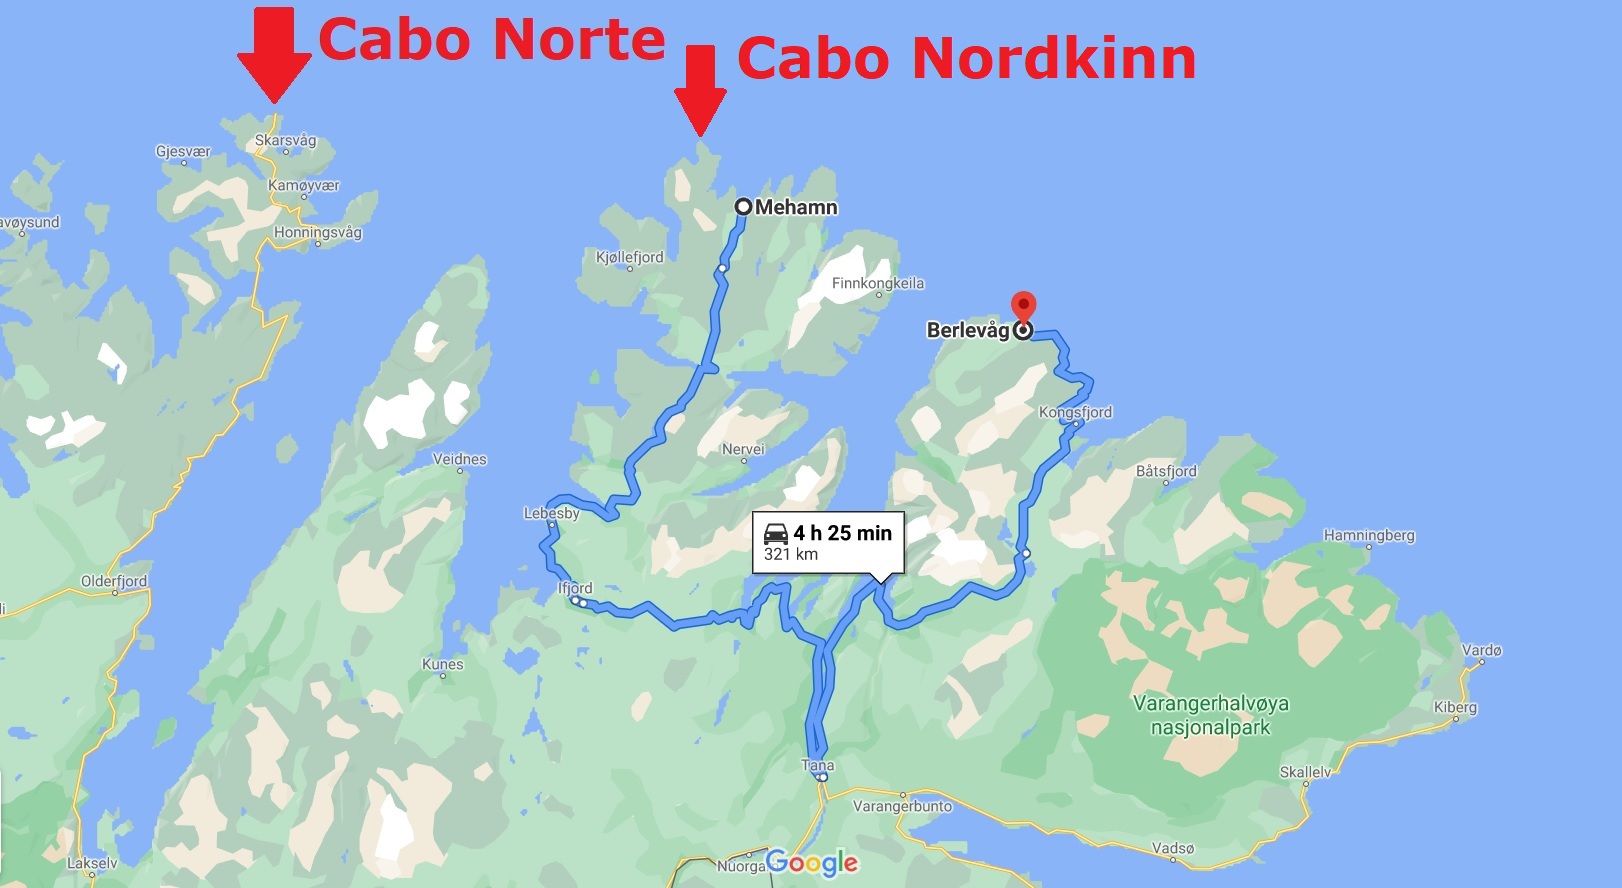 Nordkinn extremo más septentrional de Europa